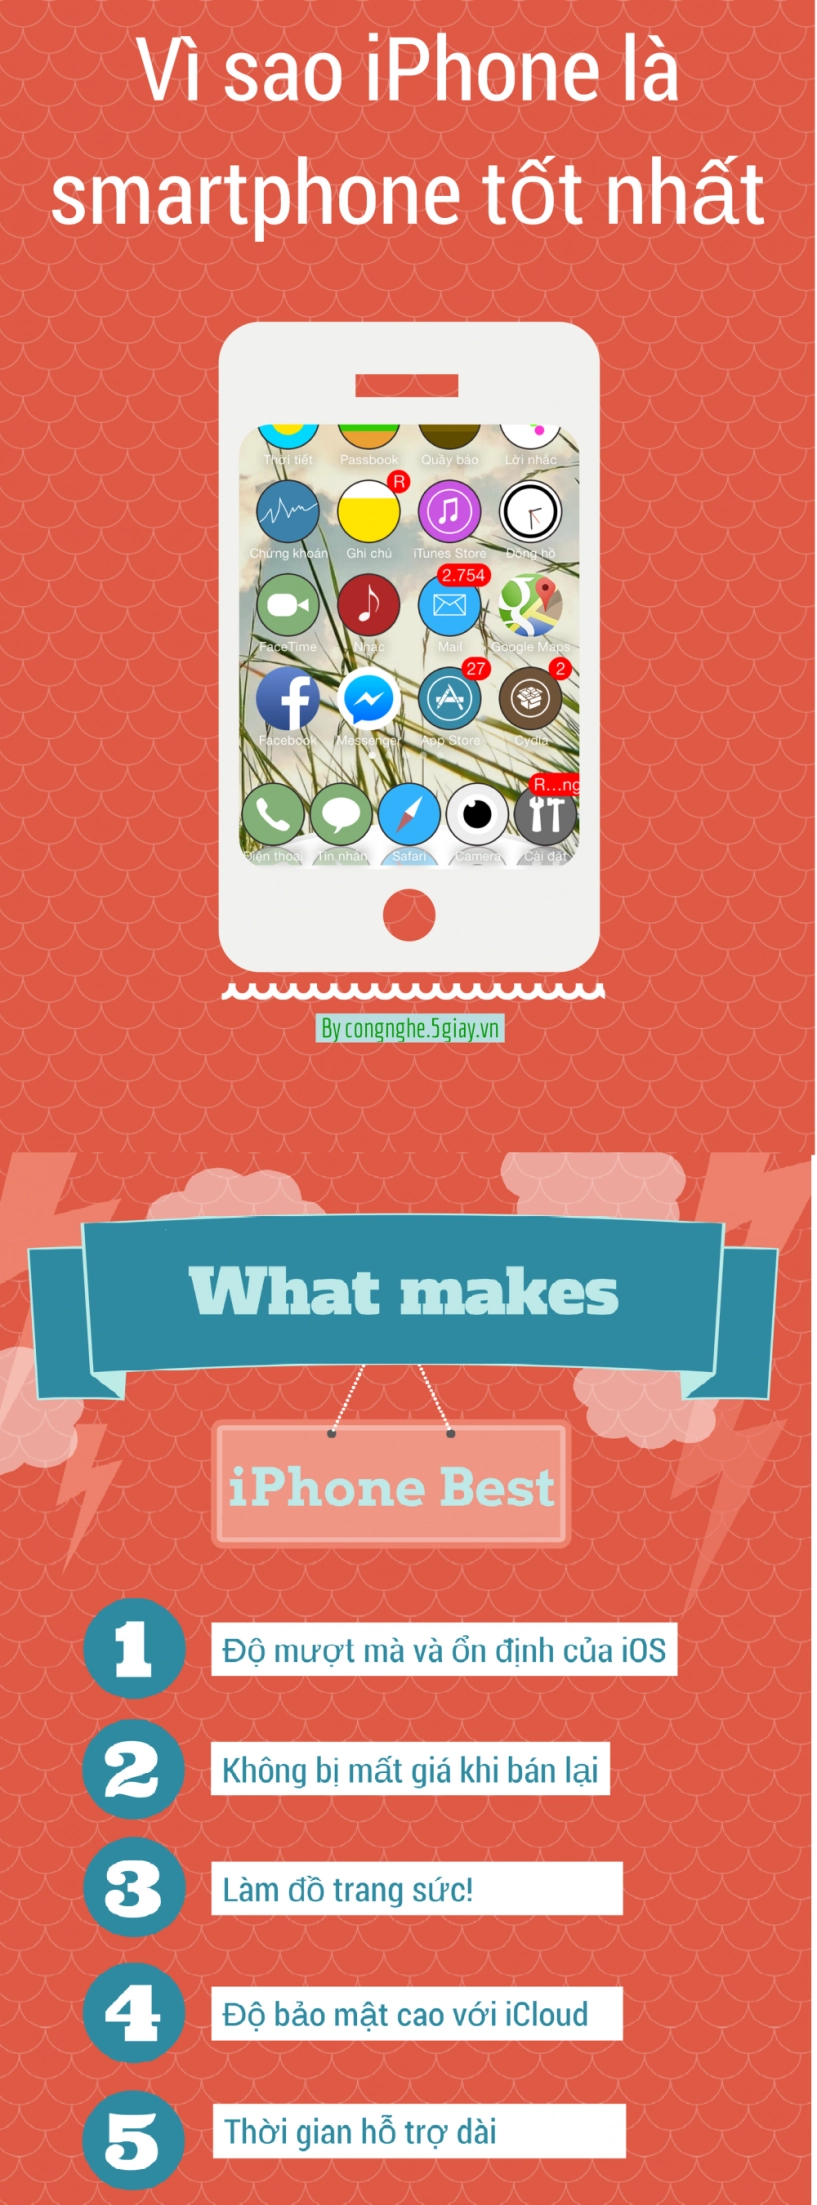 infographic 5 điều làm iphone trở nên tốt nhất - 1